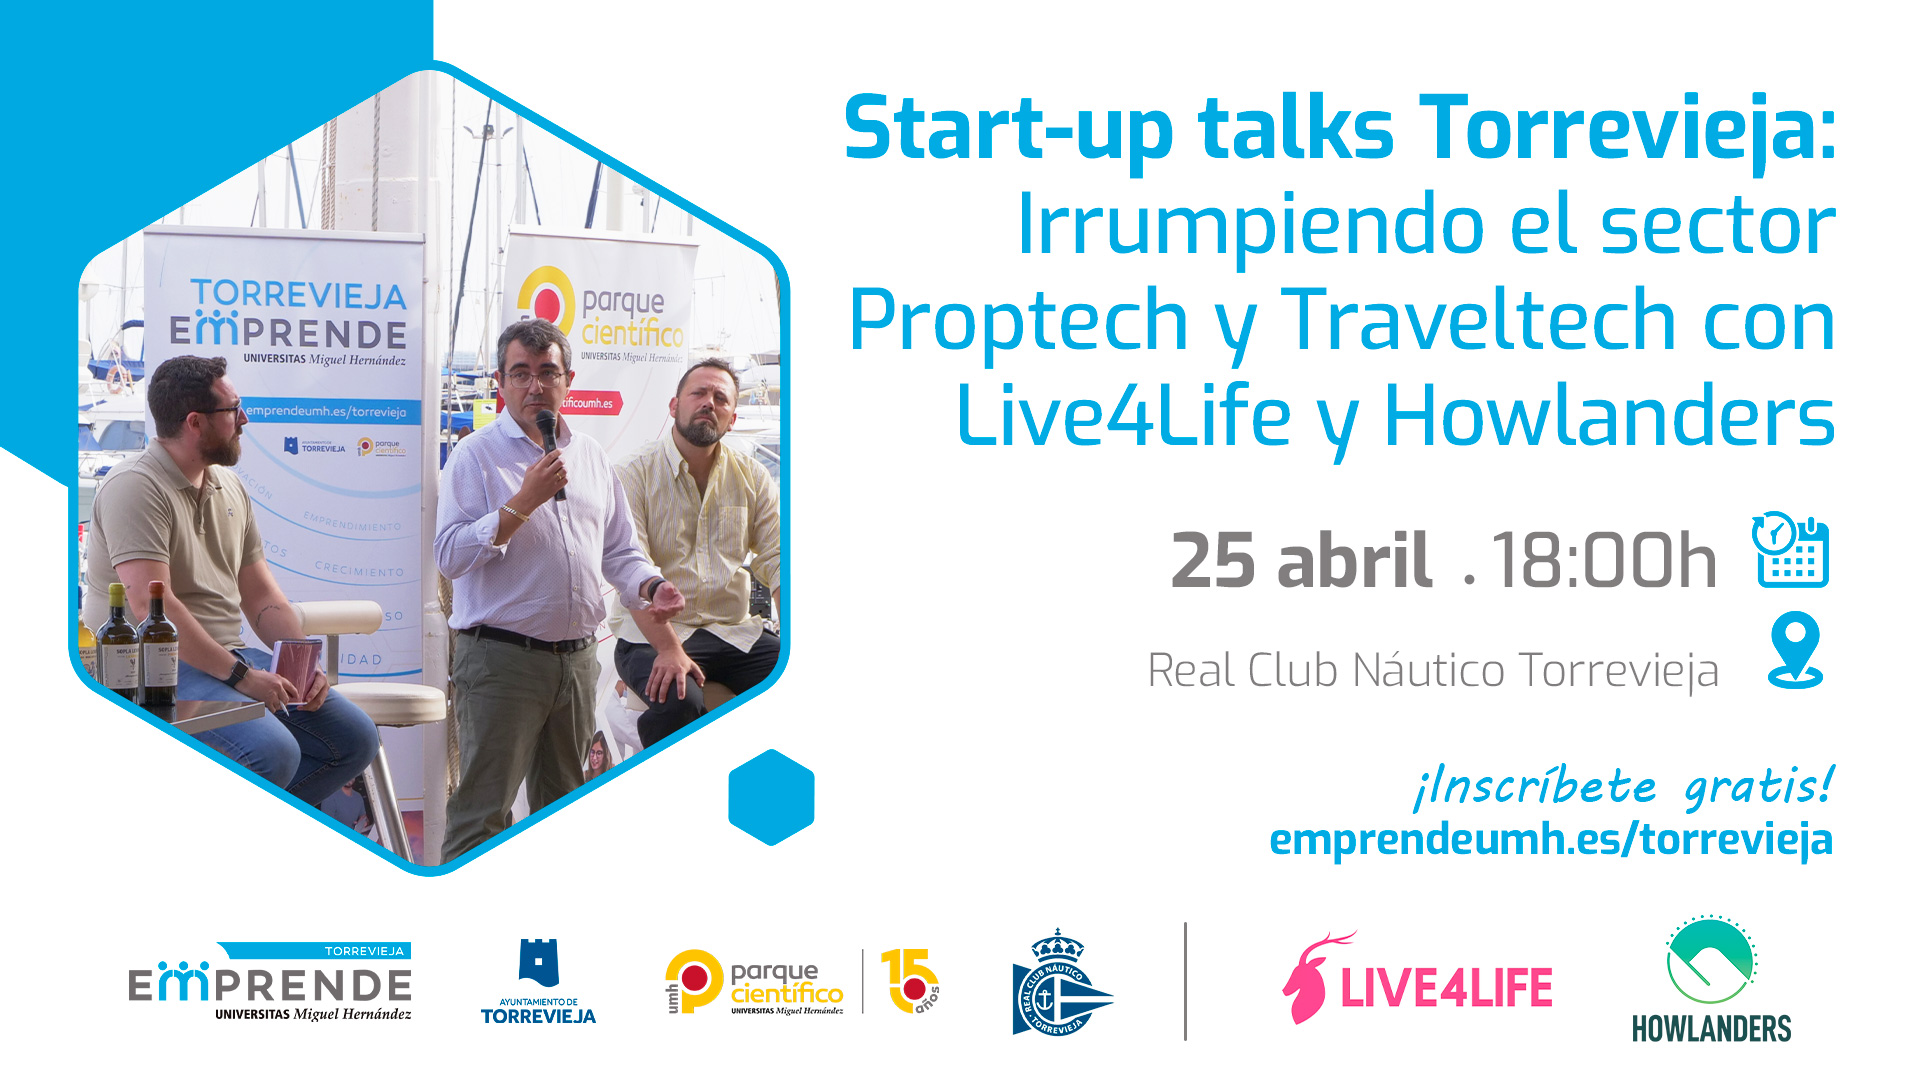 En este momento estás viendo Start-up talks Torrevieja: Irrumpiendo el sector Proptech y Traveltech con Live4Life y Howlanders